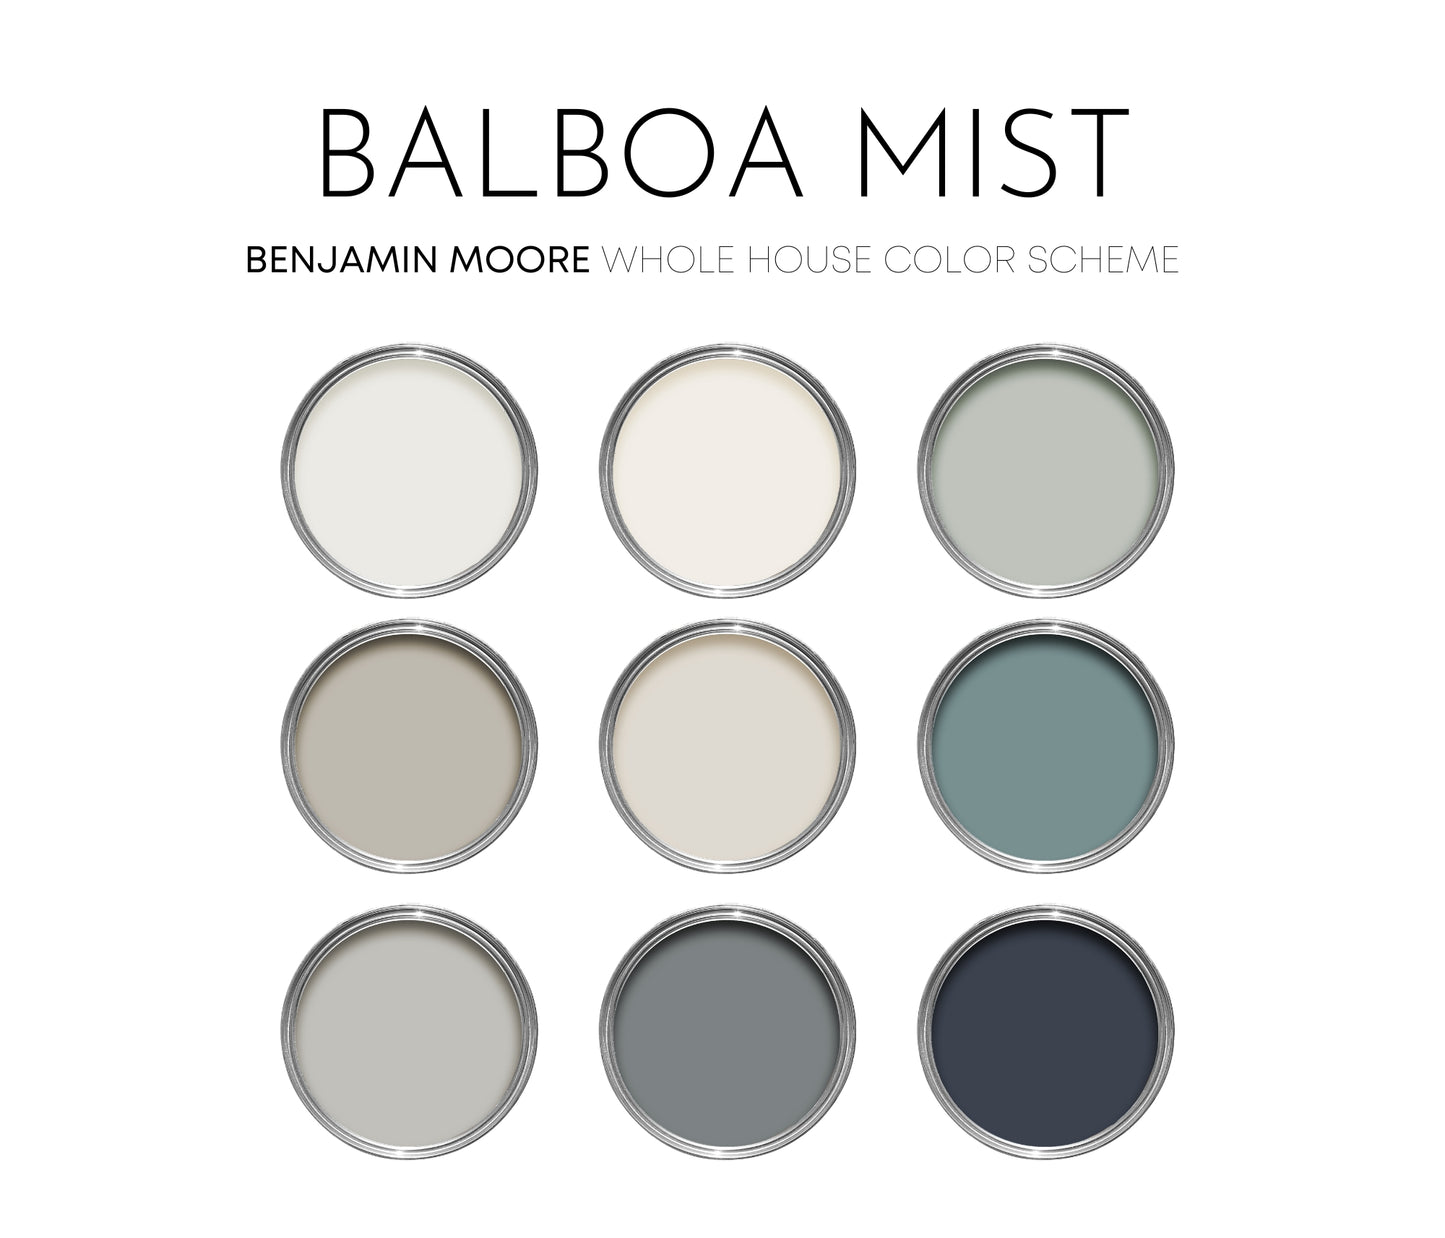 Balboa Mist Benjamin Moore Paint Palette, Neutral Interior Paint Colors, Balboa Mist Color Scheme, Balboa Mist Compliments, Warm Neutral Paint, White Dove